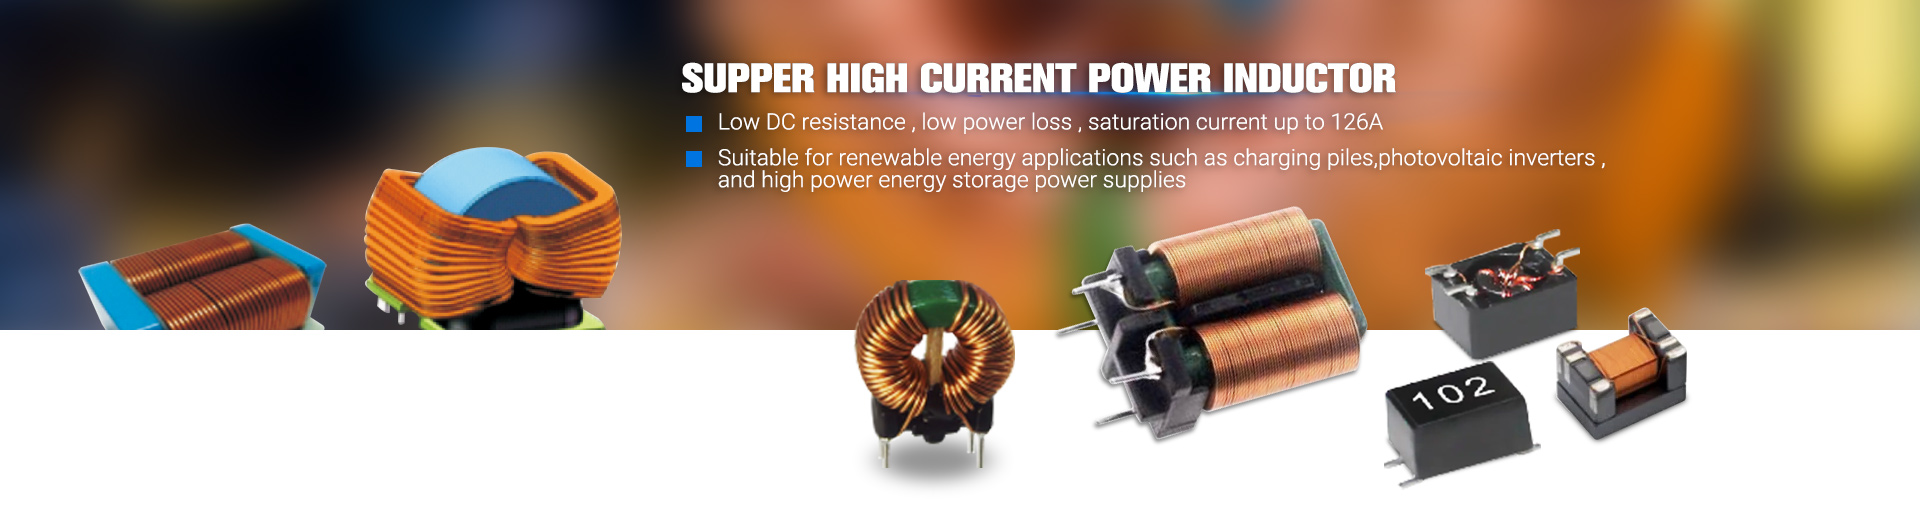 Aangepaste hoge stroom ringkern Power Inductor circulaire inductor